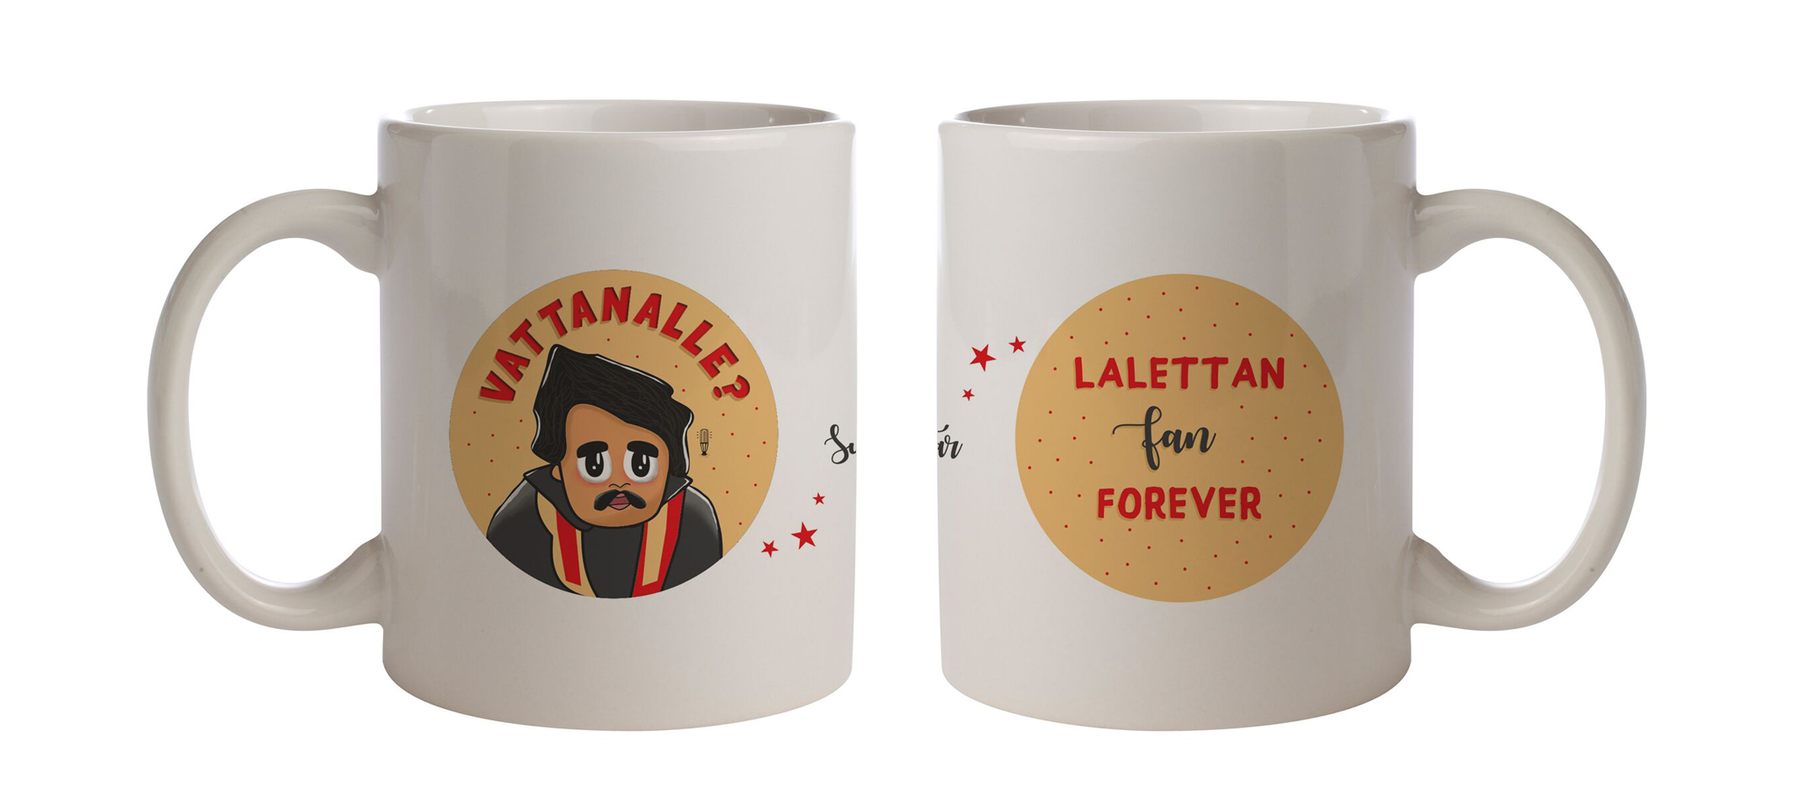 Lalettan fan Coffee Mug